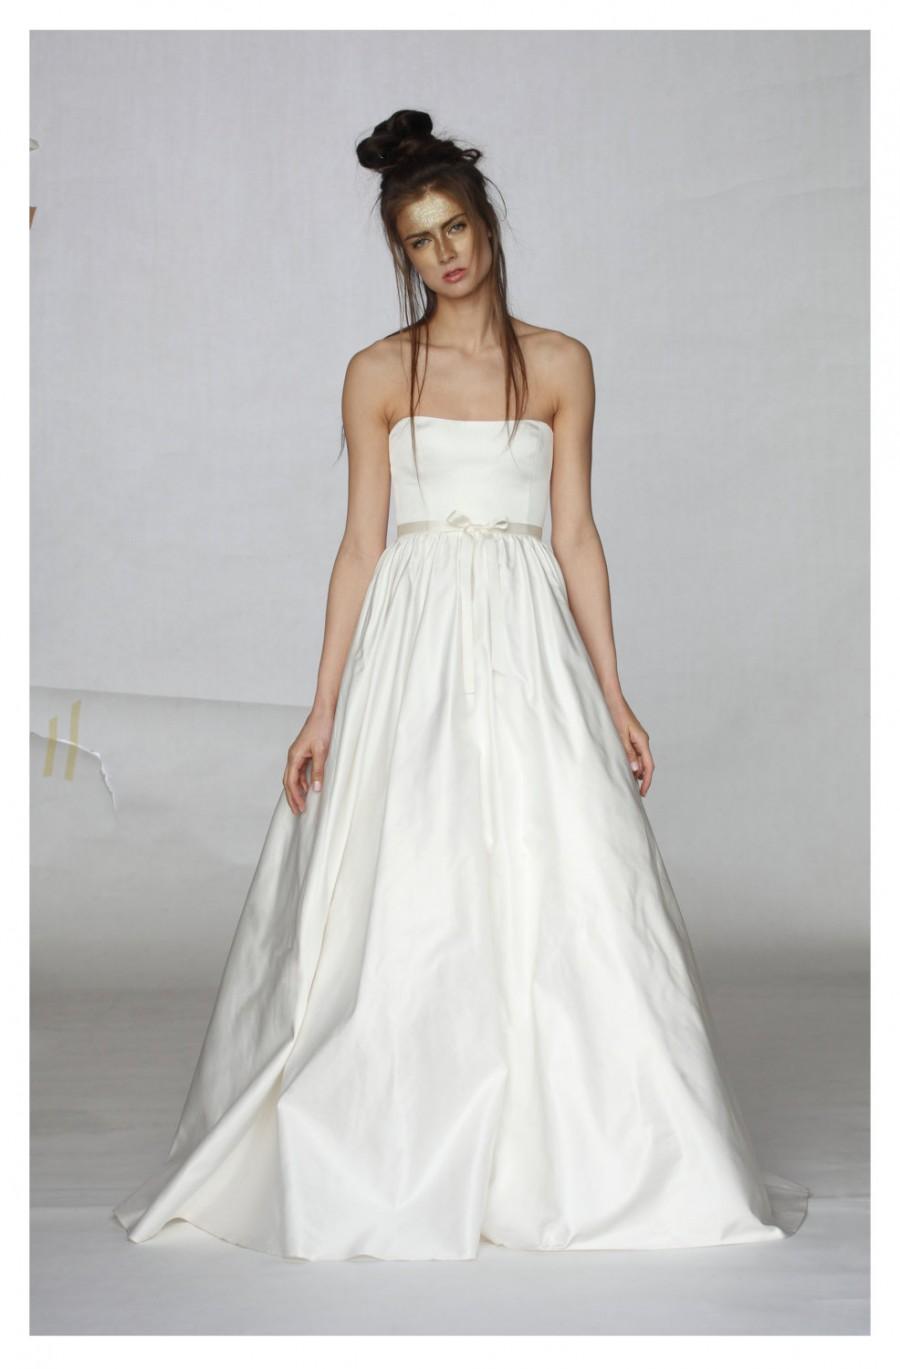 زفاف - Silk Wedding Dress, White Silk Dress, Long Wedding Dress, Bridal White Dress, Sexy Wedding Dress, Bridal Gown, A Line Dress, Maxi Dress